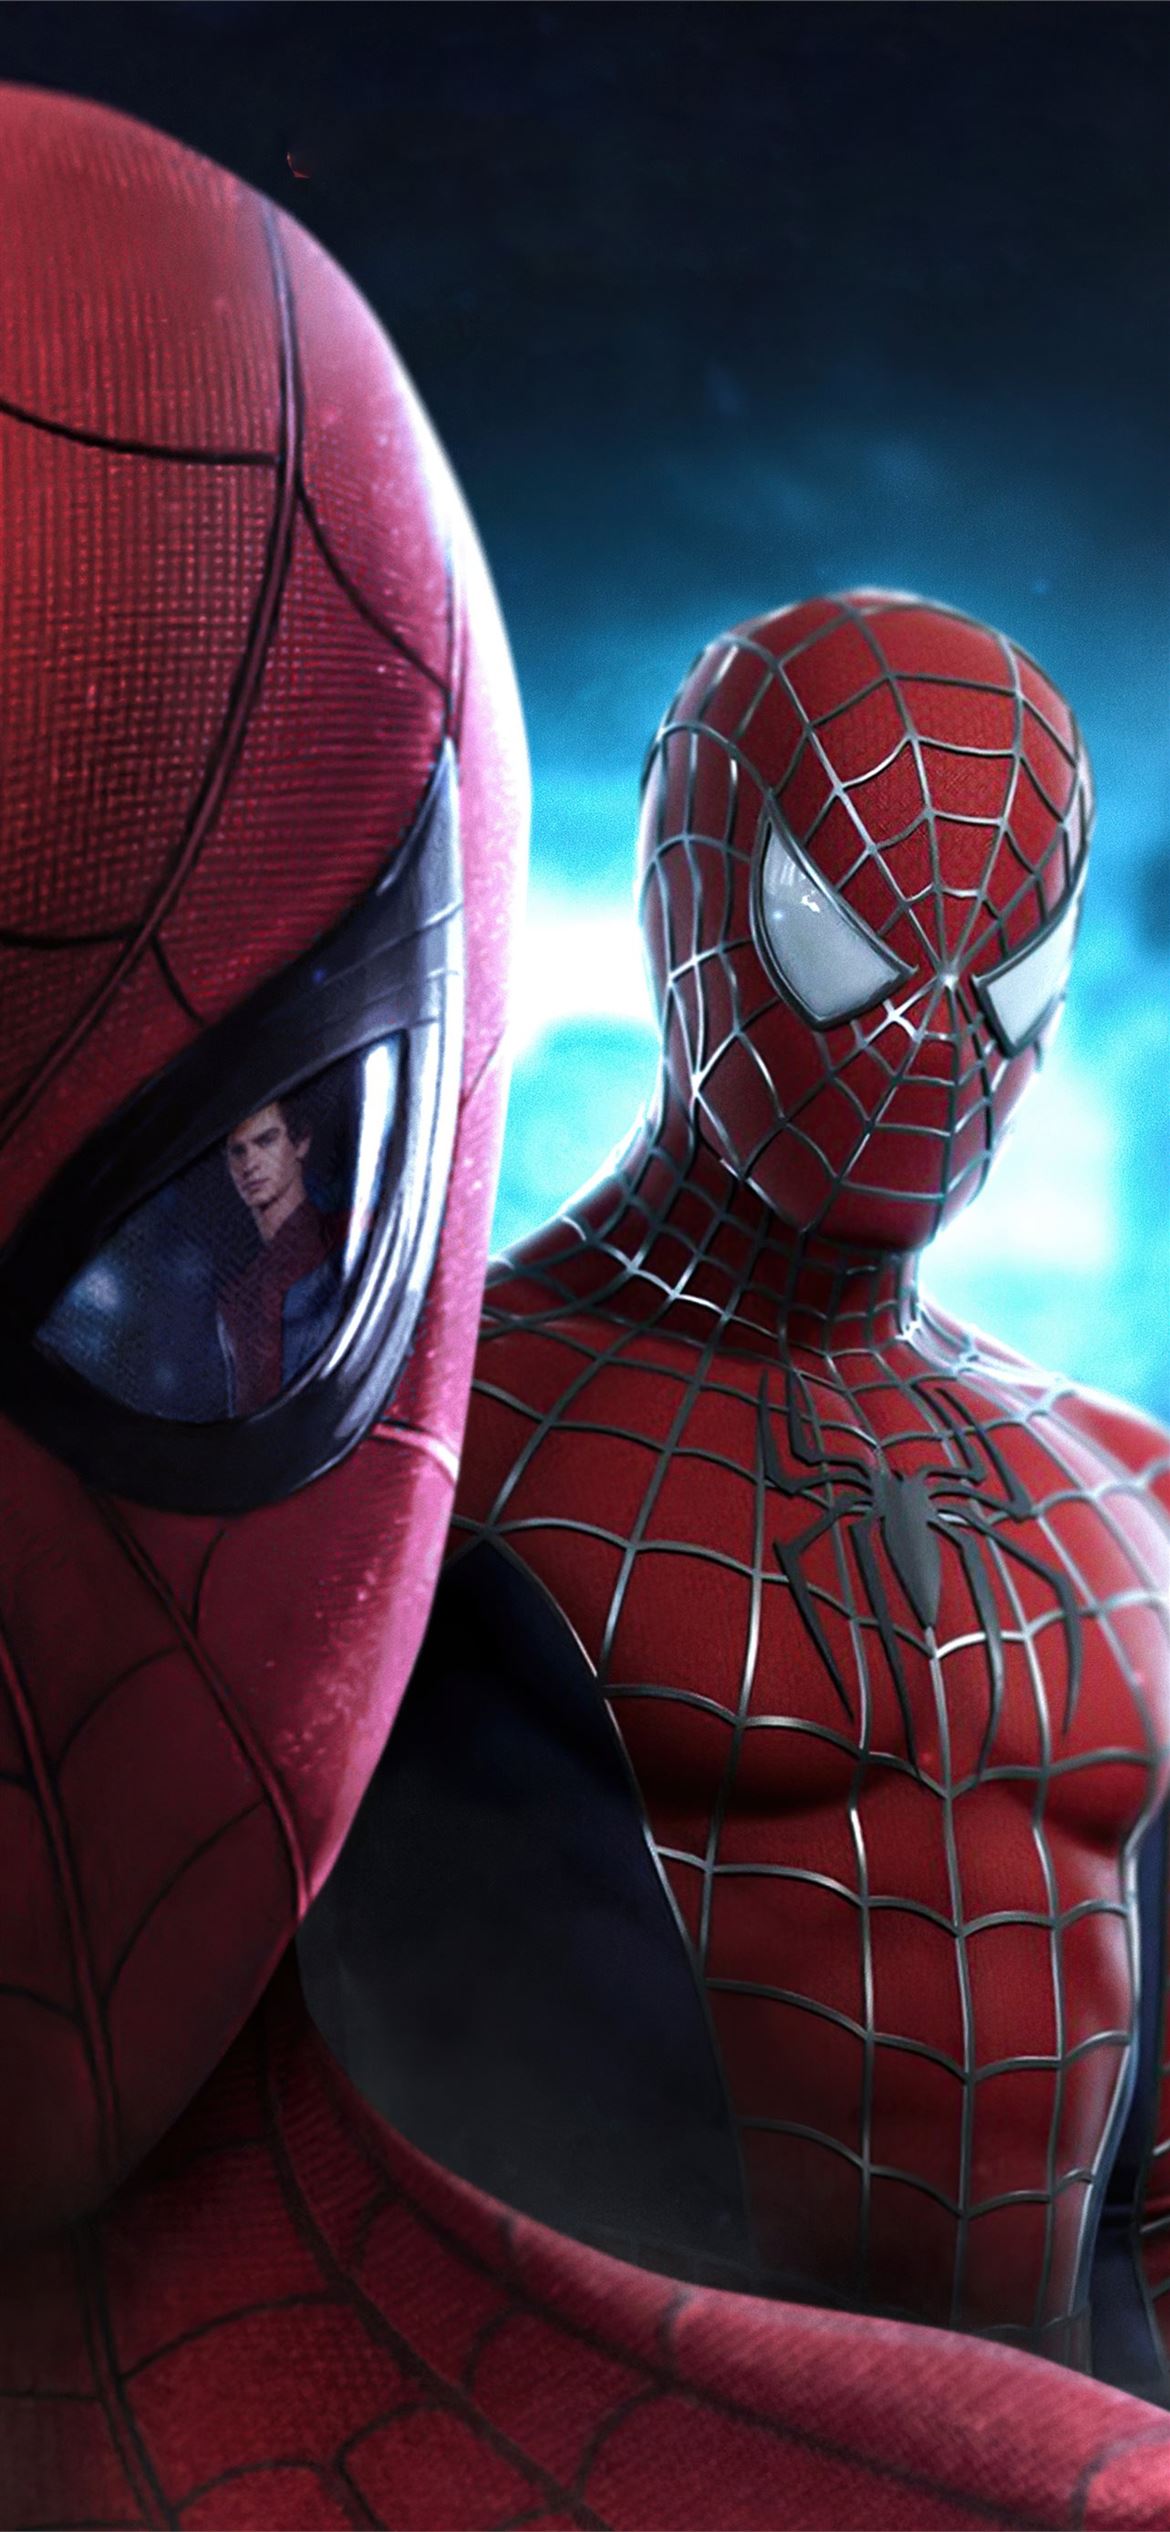 Spider Man No Way Home Movie 4k iPhone Wallpaper